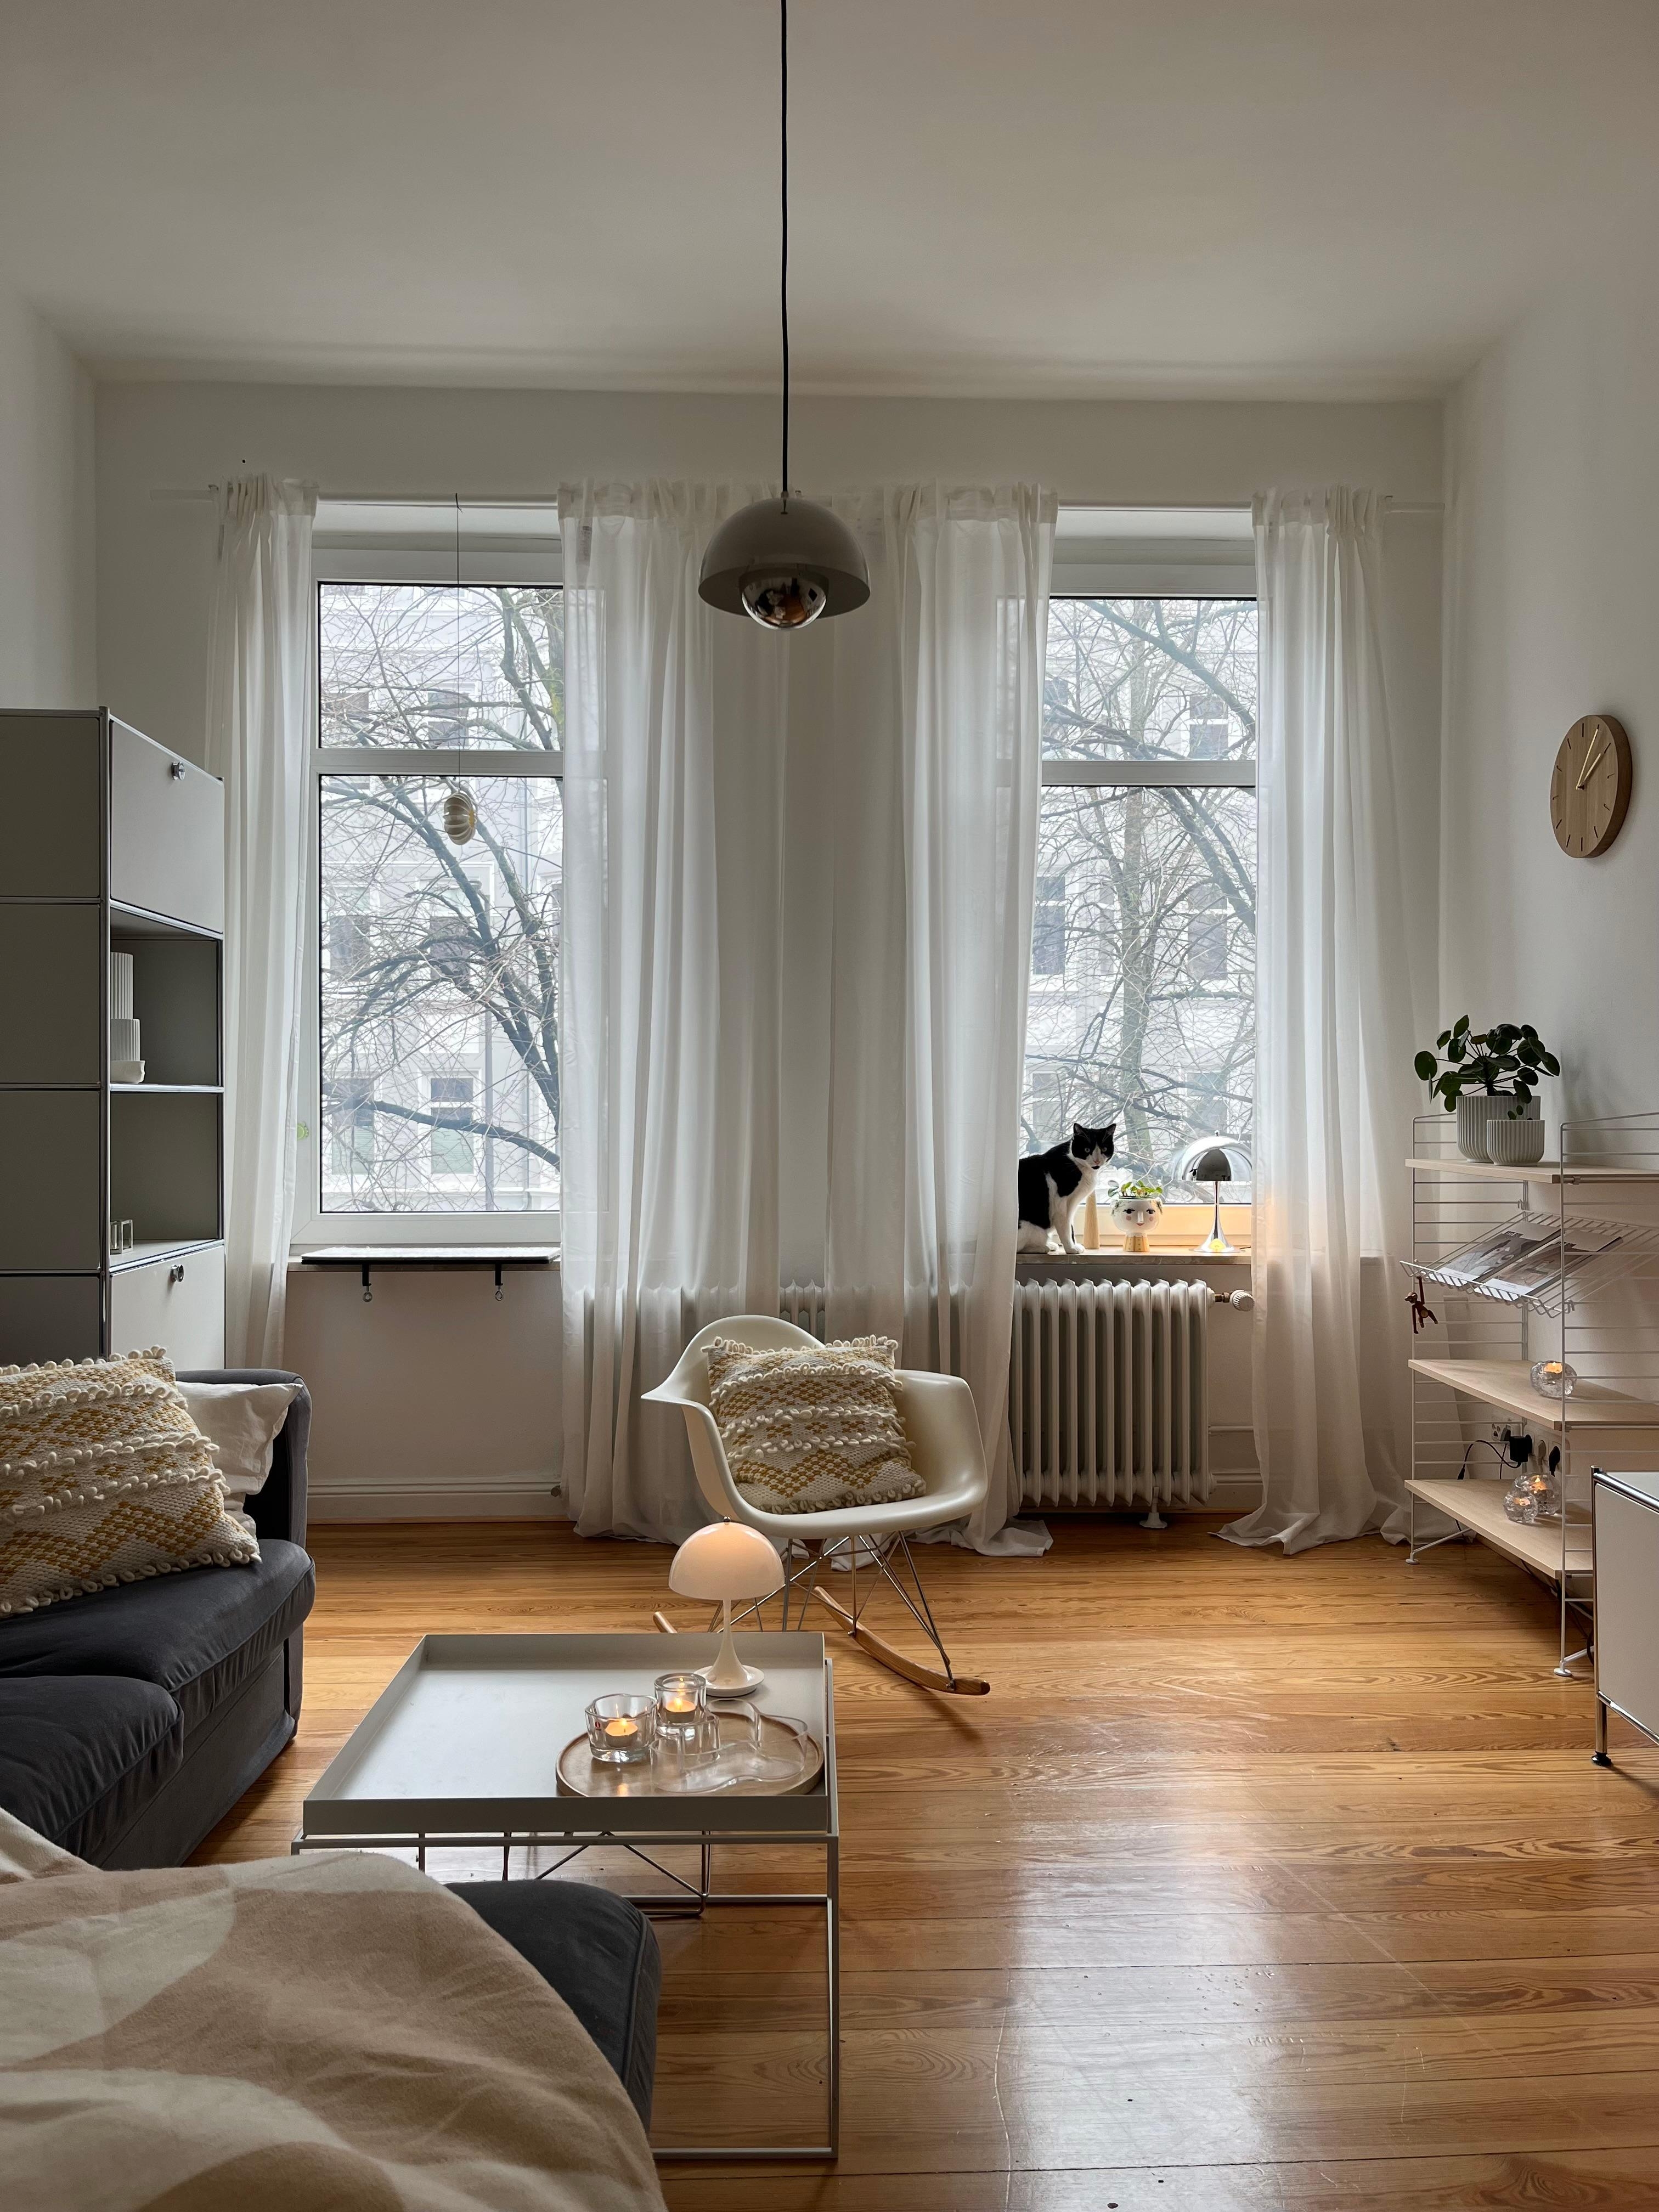 #wohnzimmer #danishdesign #designlover #hyggehome #skandinavischwohnen #altbauwohnung